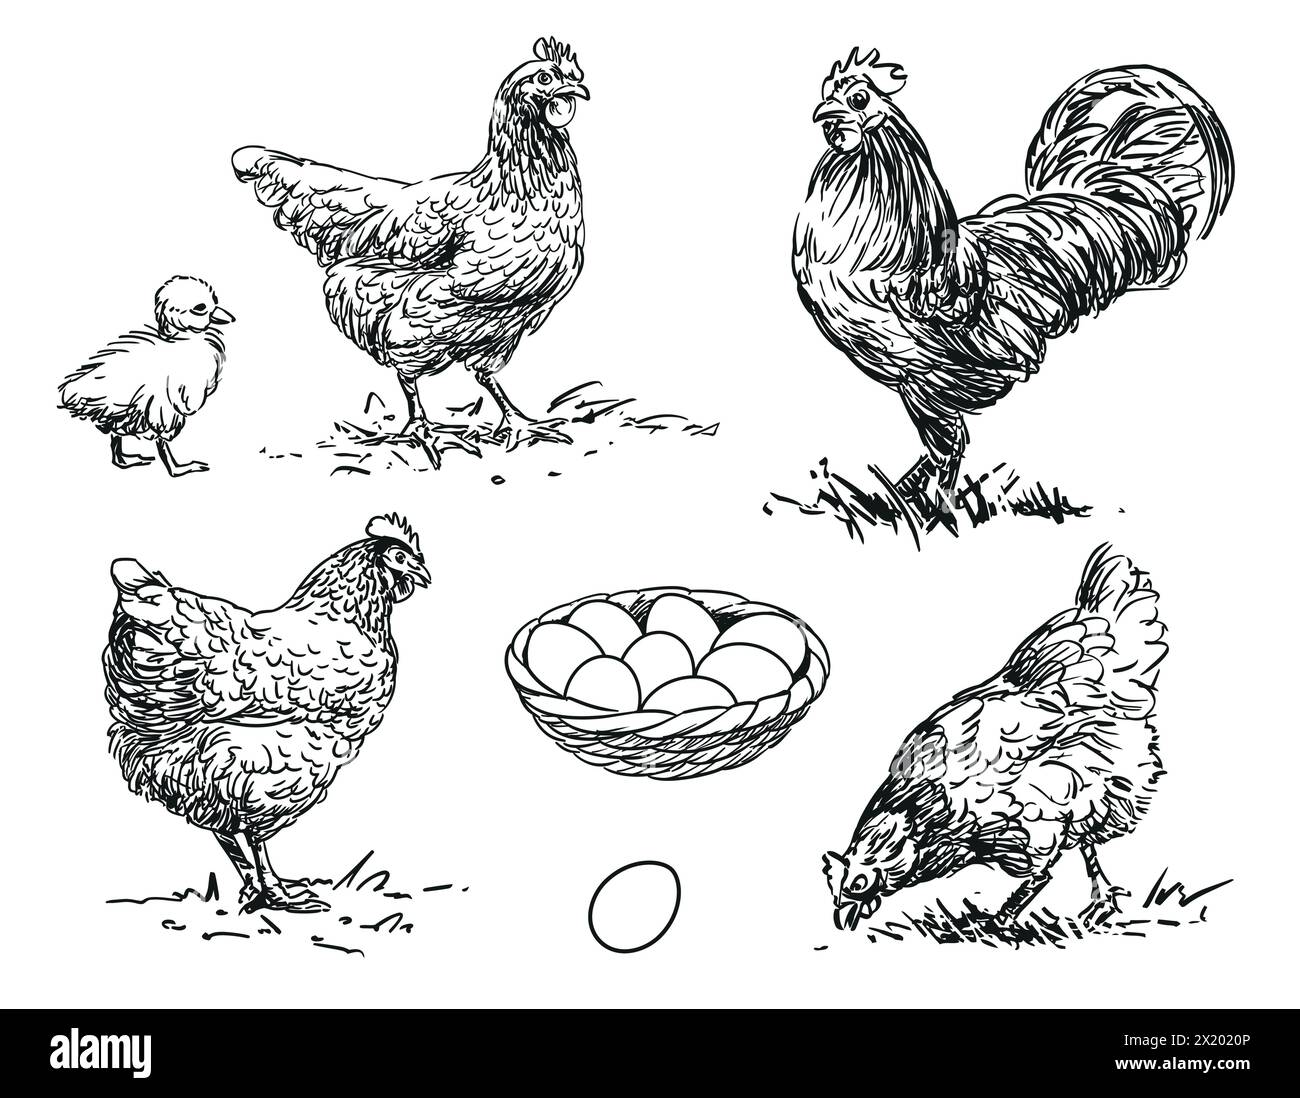 Poulet - ensemble d'animaux de ferme illustration de volaille, dessins en noir et blanc de poule, coq, poussin et oeuf Illustration de Vecteur